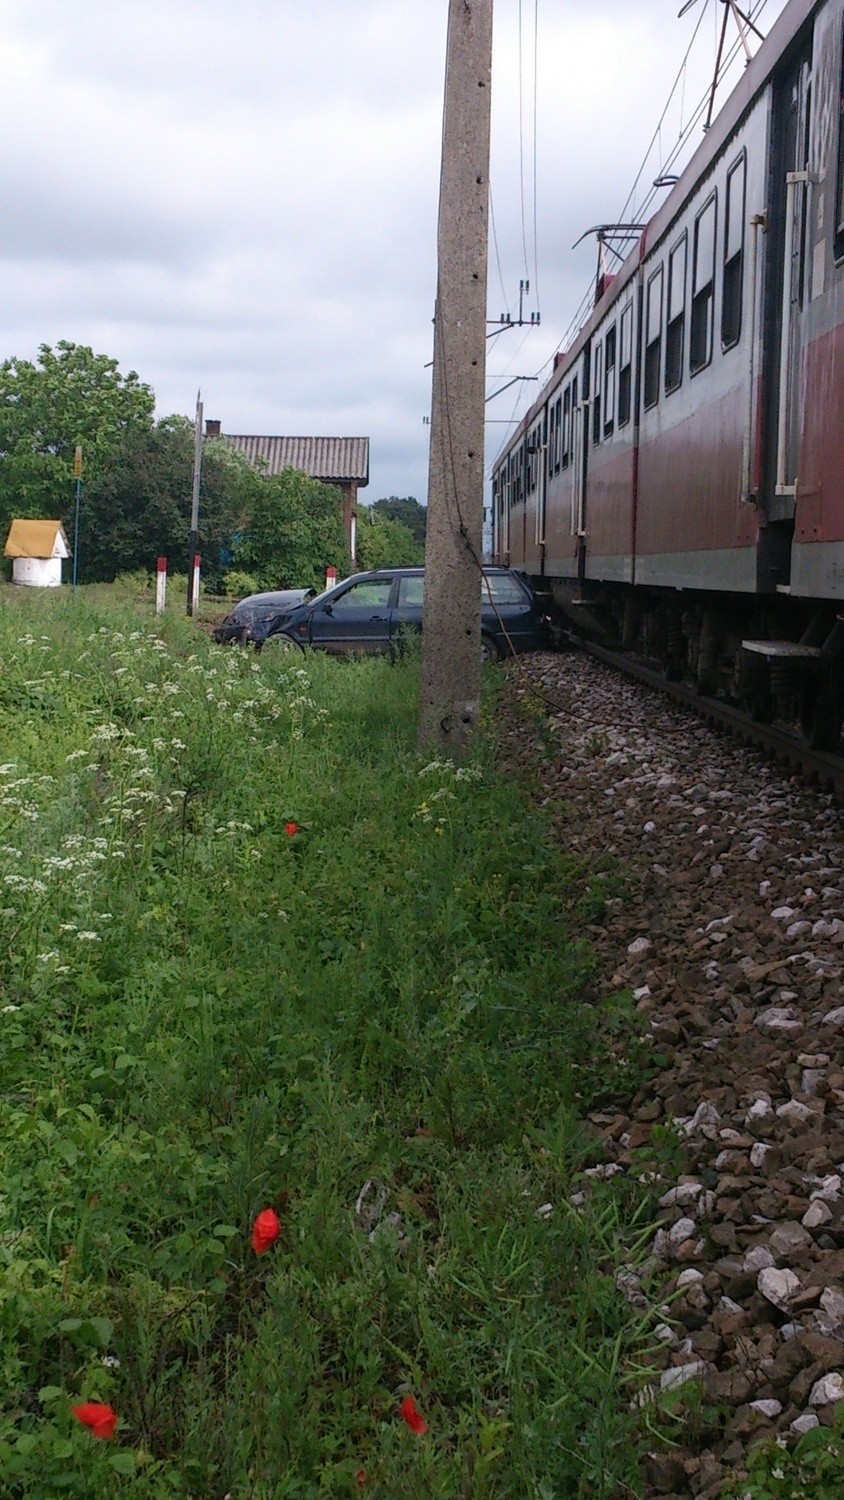 Na szlaku Trawniki-Rejowiec kierowca samochodu wjechał w pociąg